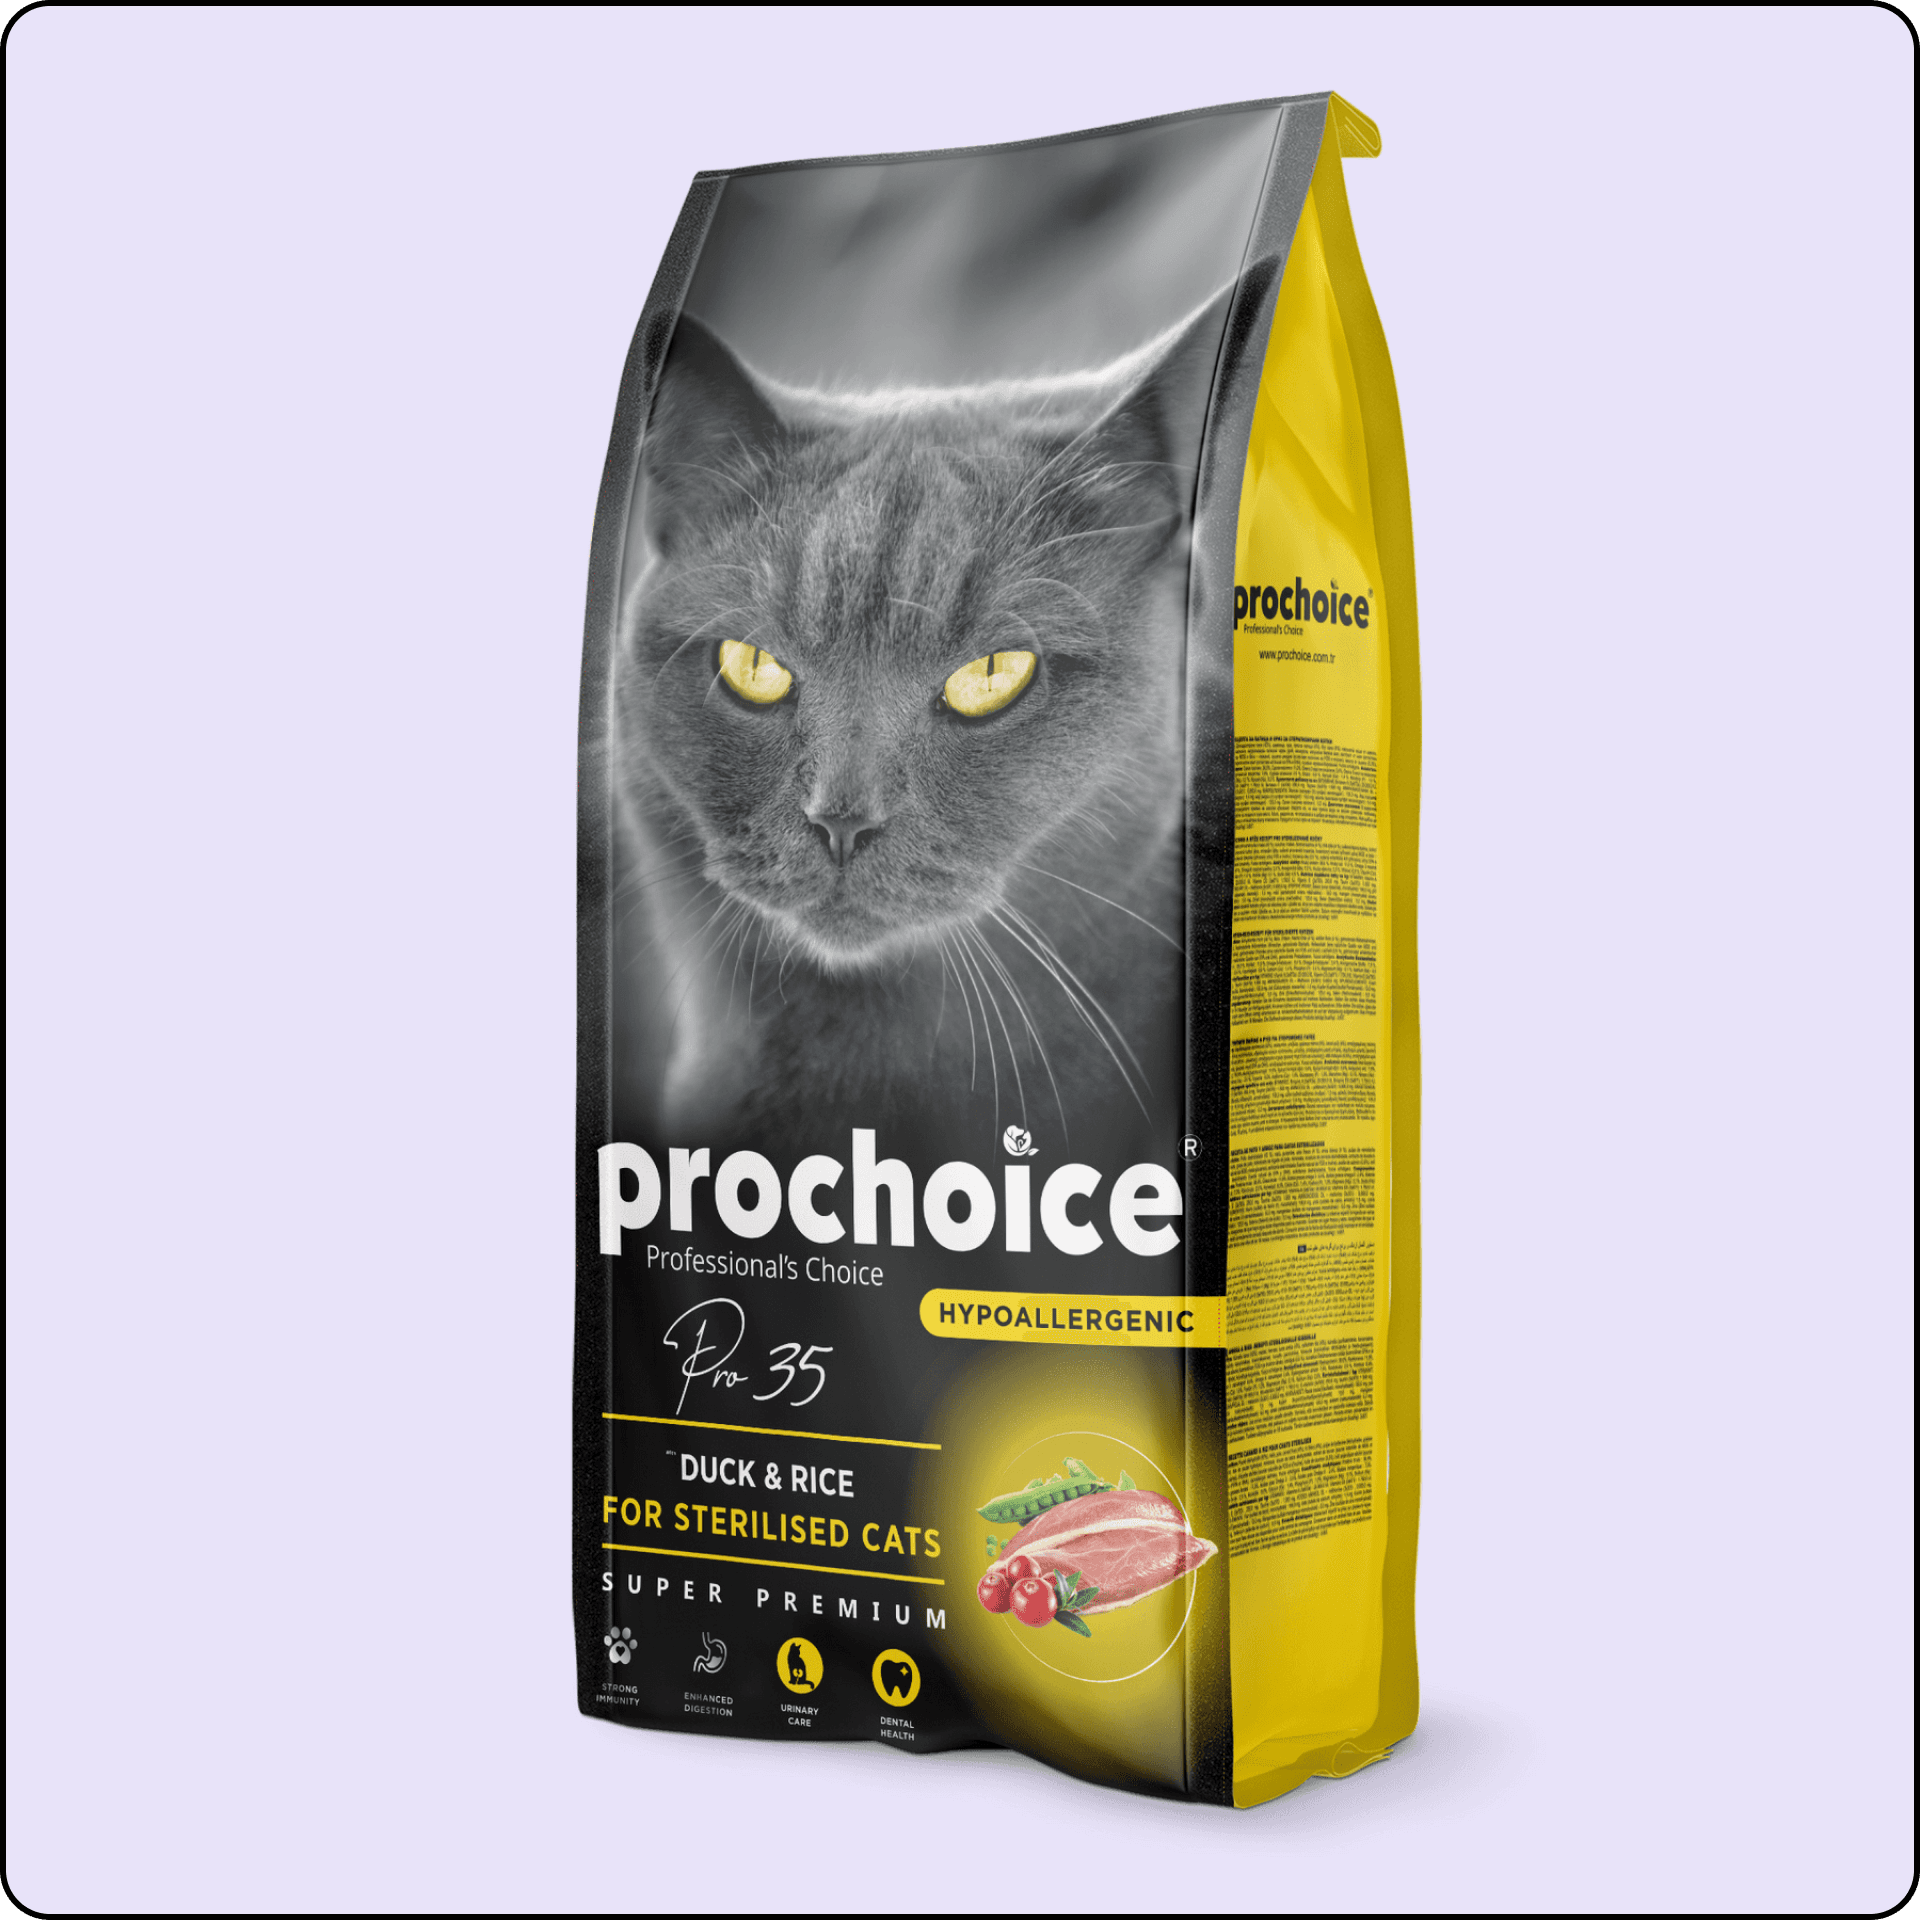 ProChoice 35 HypoAllergenic Ördekli ve Pirinçli Düşük Tahıllı Kısırlaştırılmış Kedi Maması 2 kg